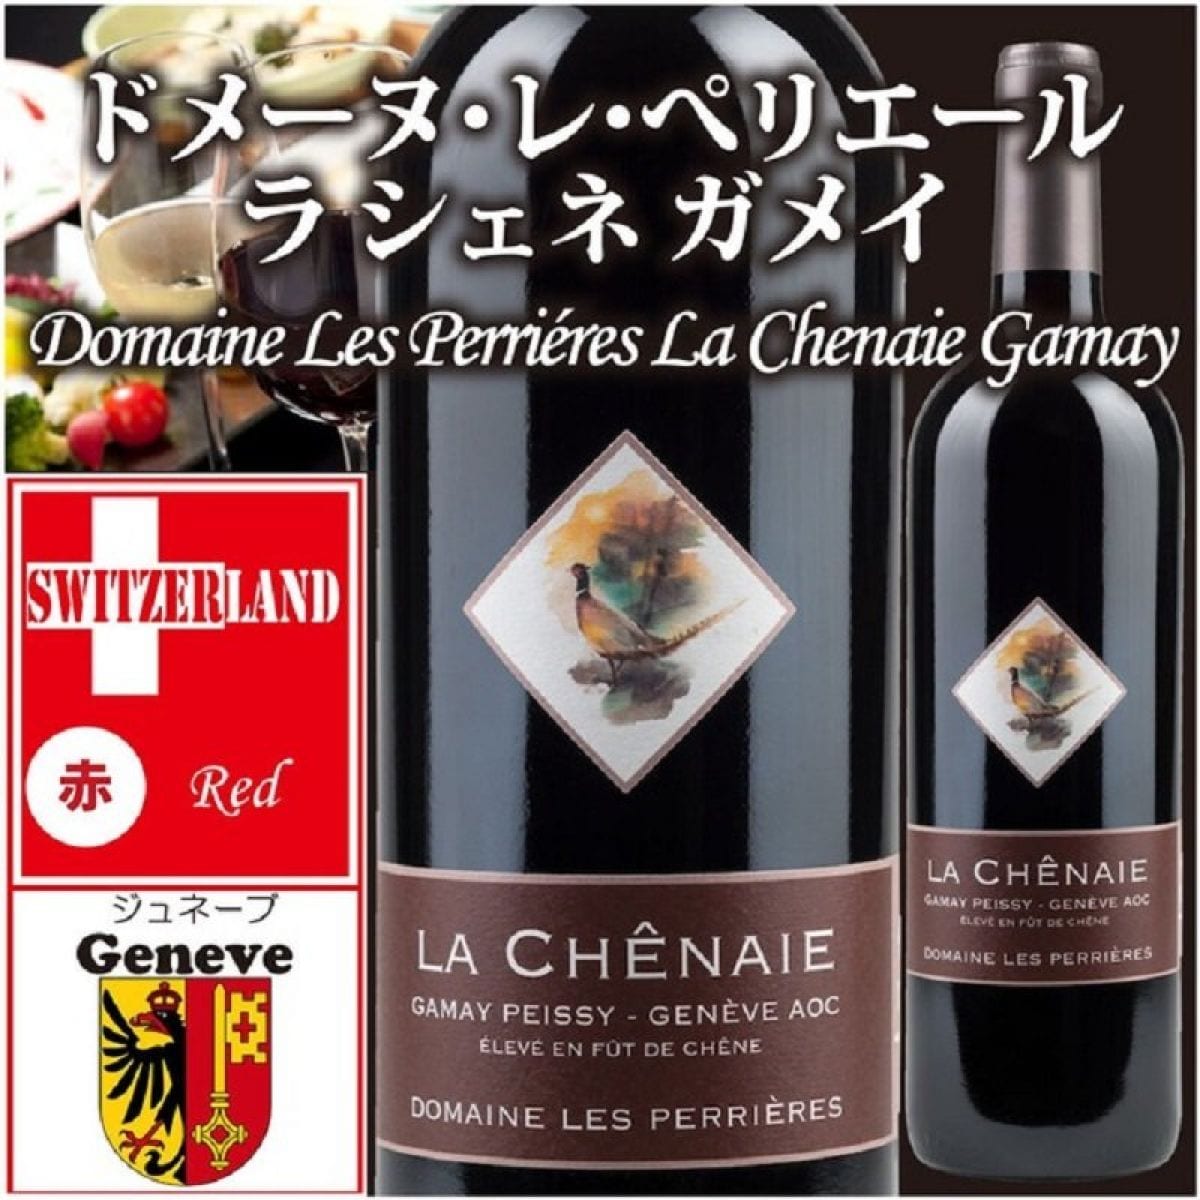 《常温便発送》【 ラ シェネ ガメイ 】スイス ジュネーブ州　Genève La Chenaie Gamay de Peissy Geneve 赤ワイン。お？おおお？？これガメイ？？と思わせる濃いガーネット！